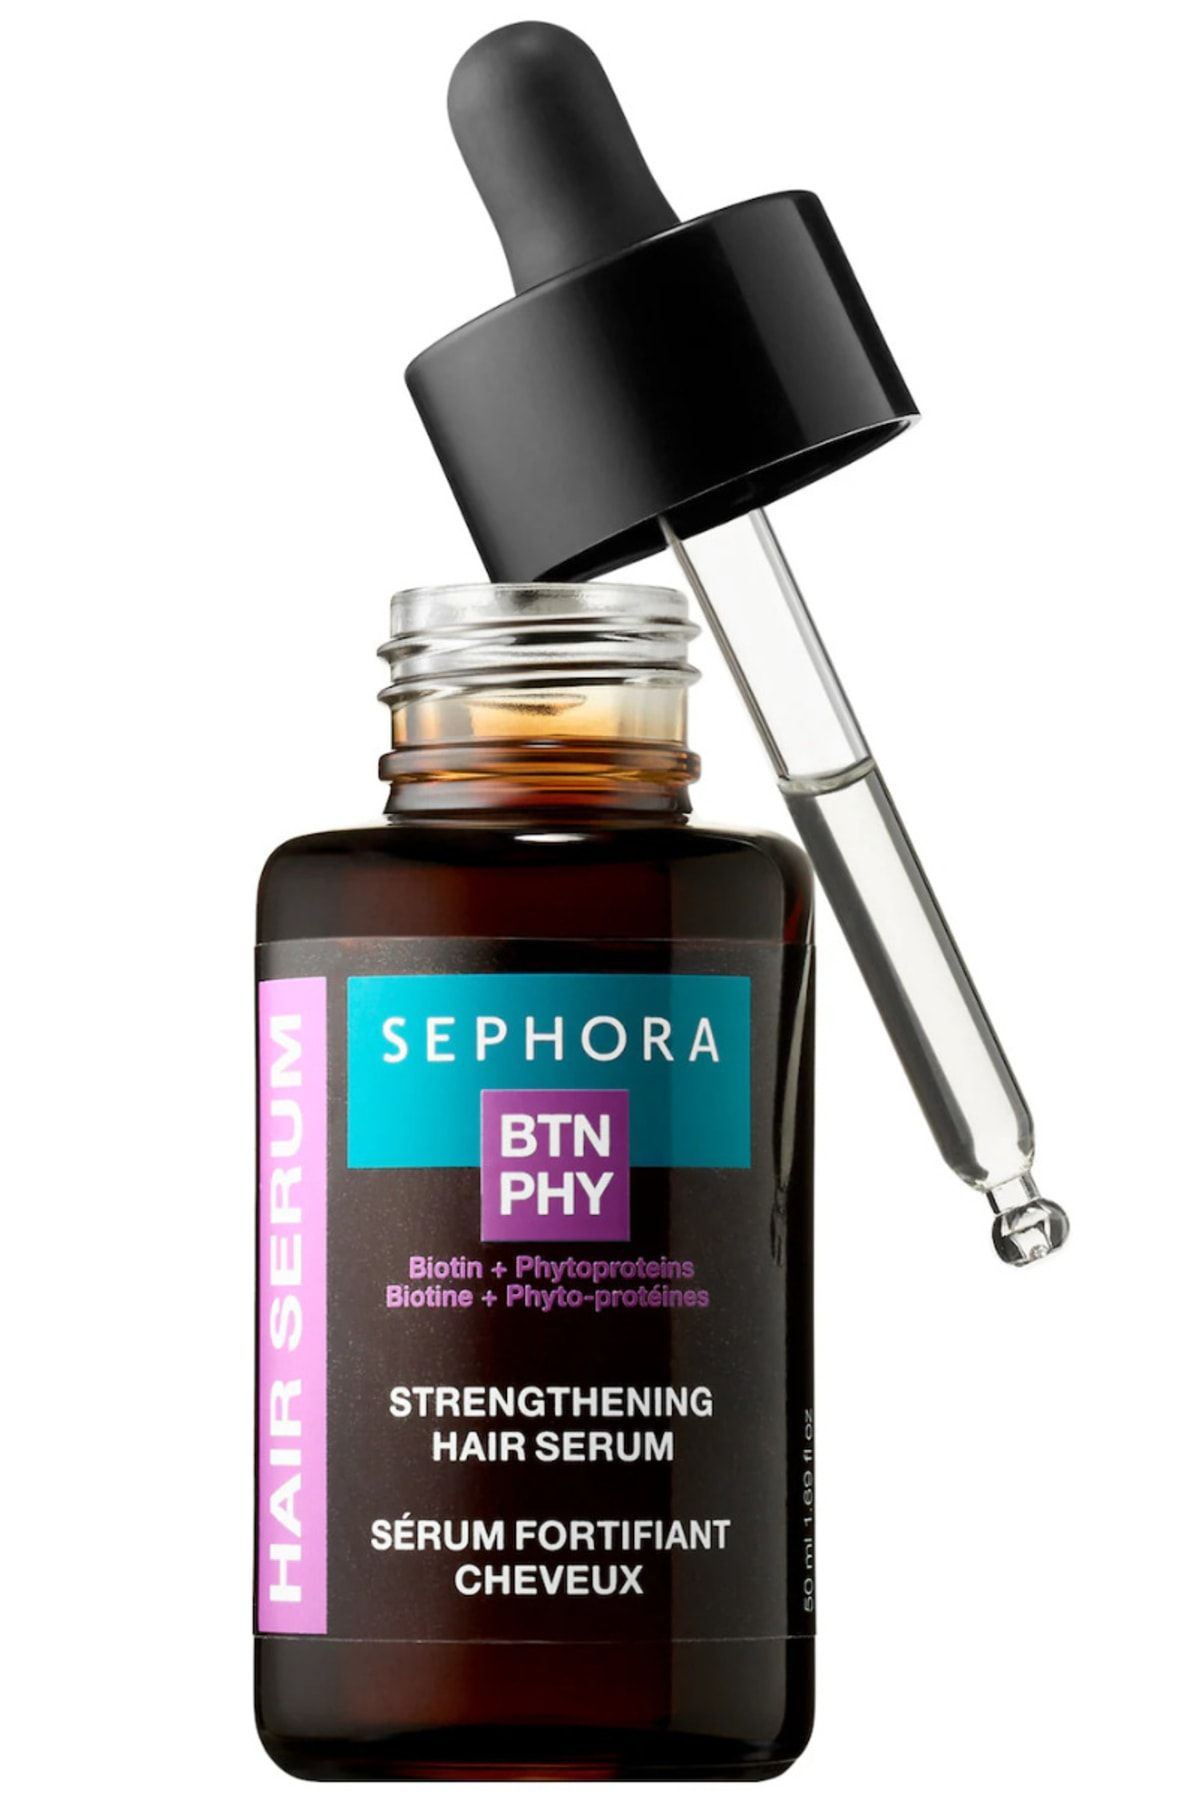 Sephora Strengthening Hair Serum With Biotin And Phytoprotiens 50 ml